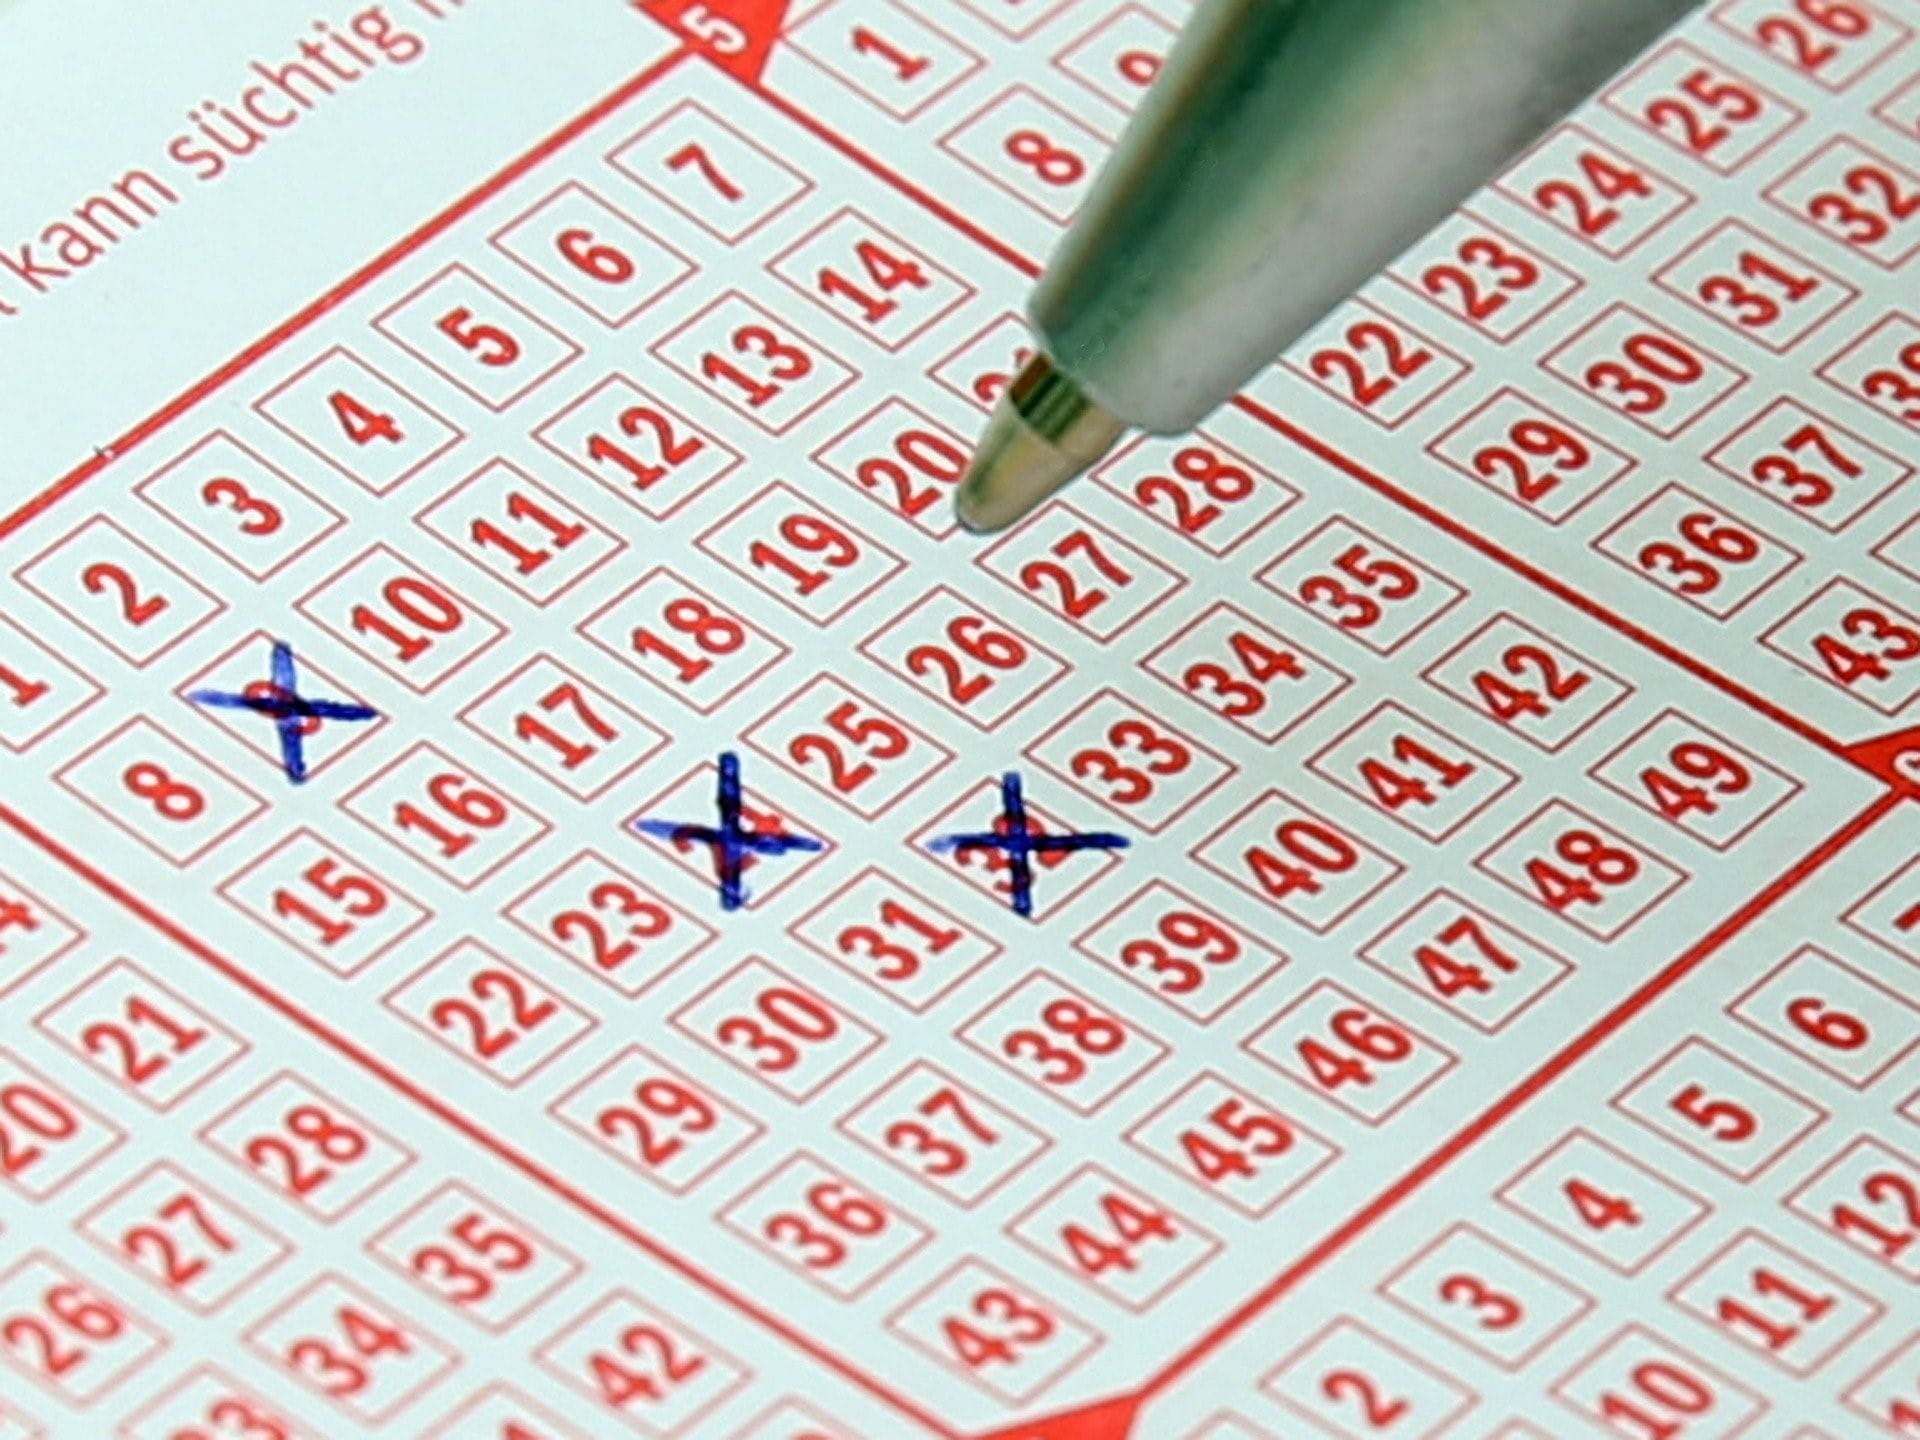 Ein roter Lottoschein, auf dem bereits drei Zahlen angekreuzt wurden. Ein Kugelschreiber schwebt über dem Lottoschein.